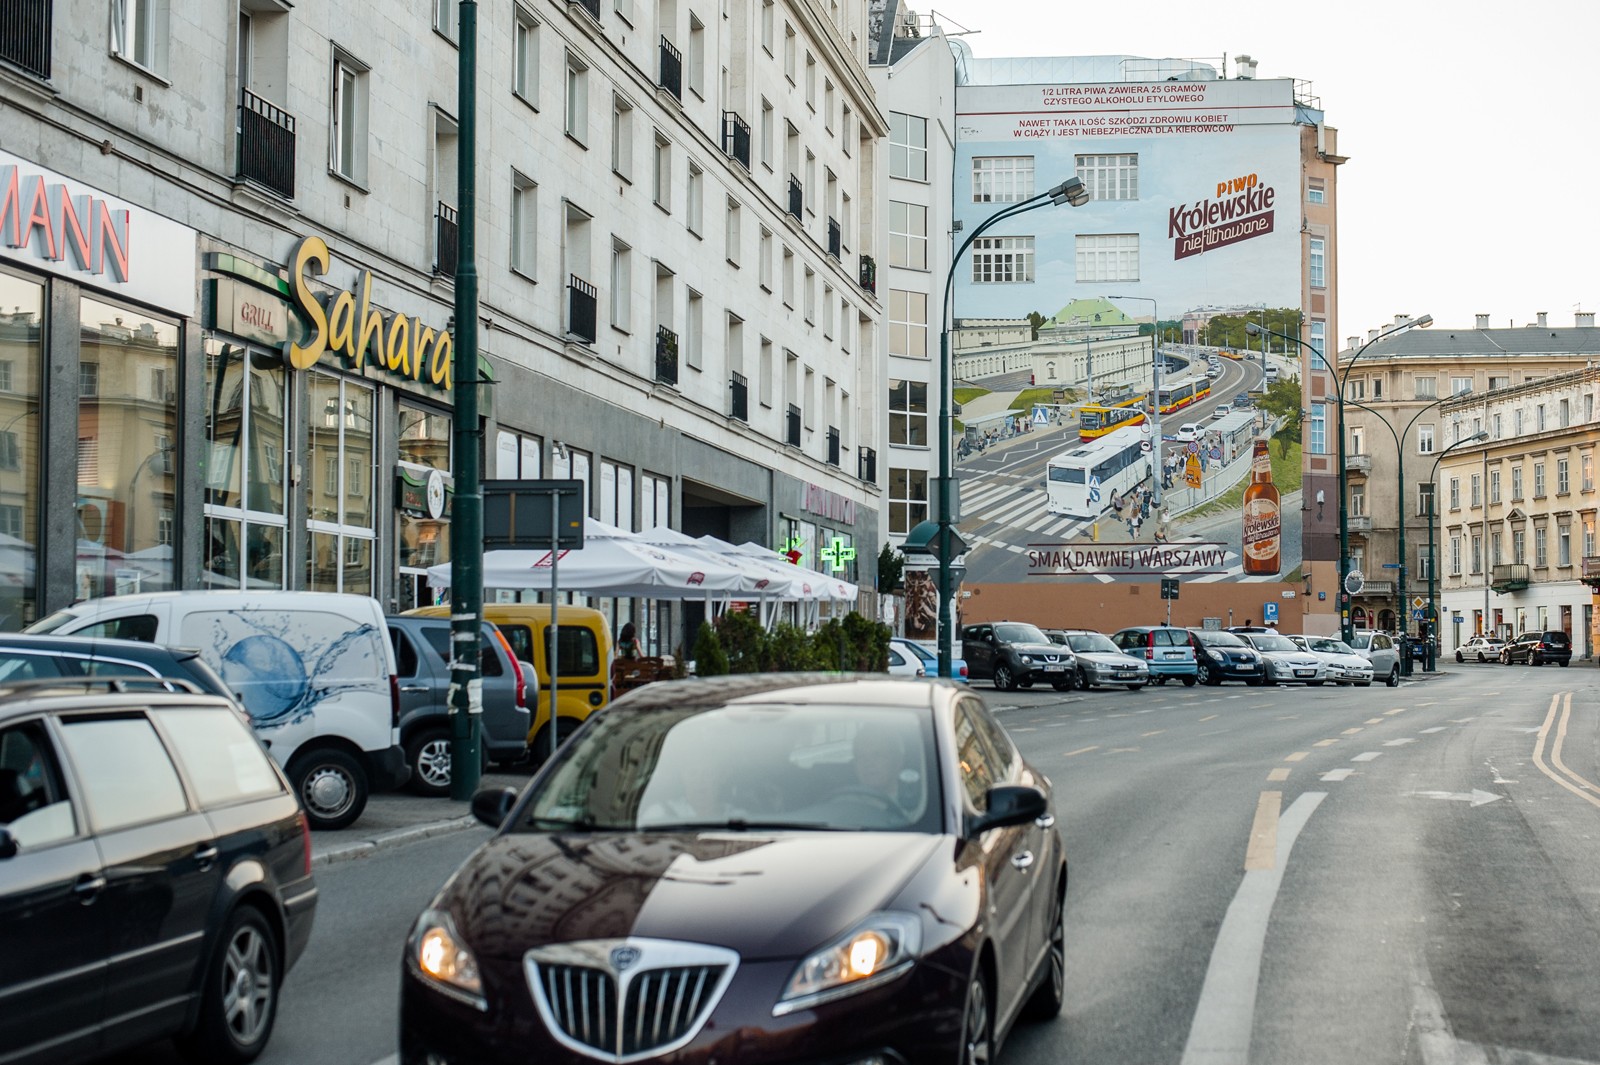 Ansicht auf die Krucza Straße in Warschau mit einem Mural als Werbung der Biermarke Królewskie nicht filtriert im Hintergrund | Krolewskie niefiltrowane | Portfolio